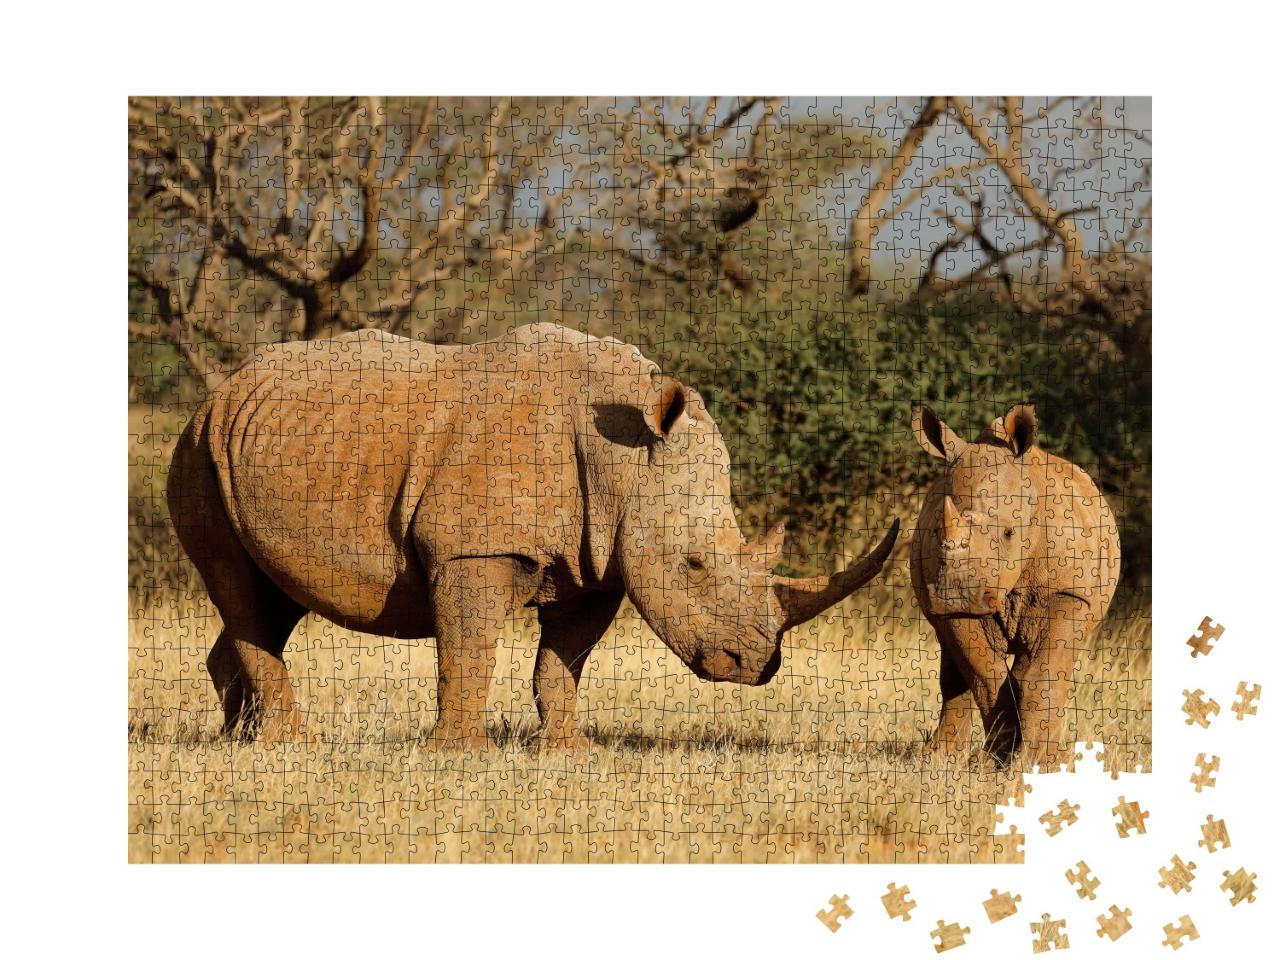 Puzzle de 1000 pièces « Rhinocéros blanc avec son veau en Afrique du Sud »